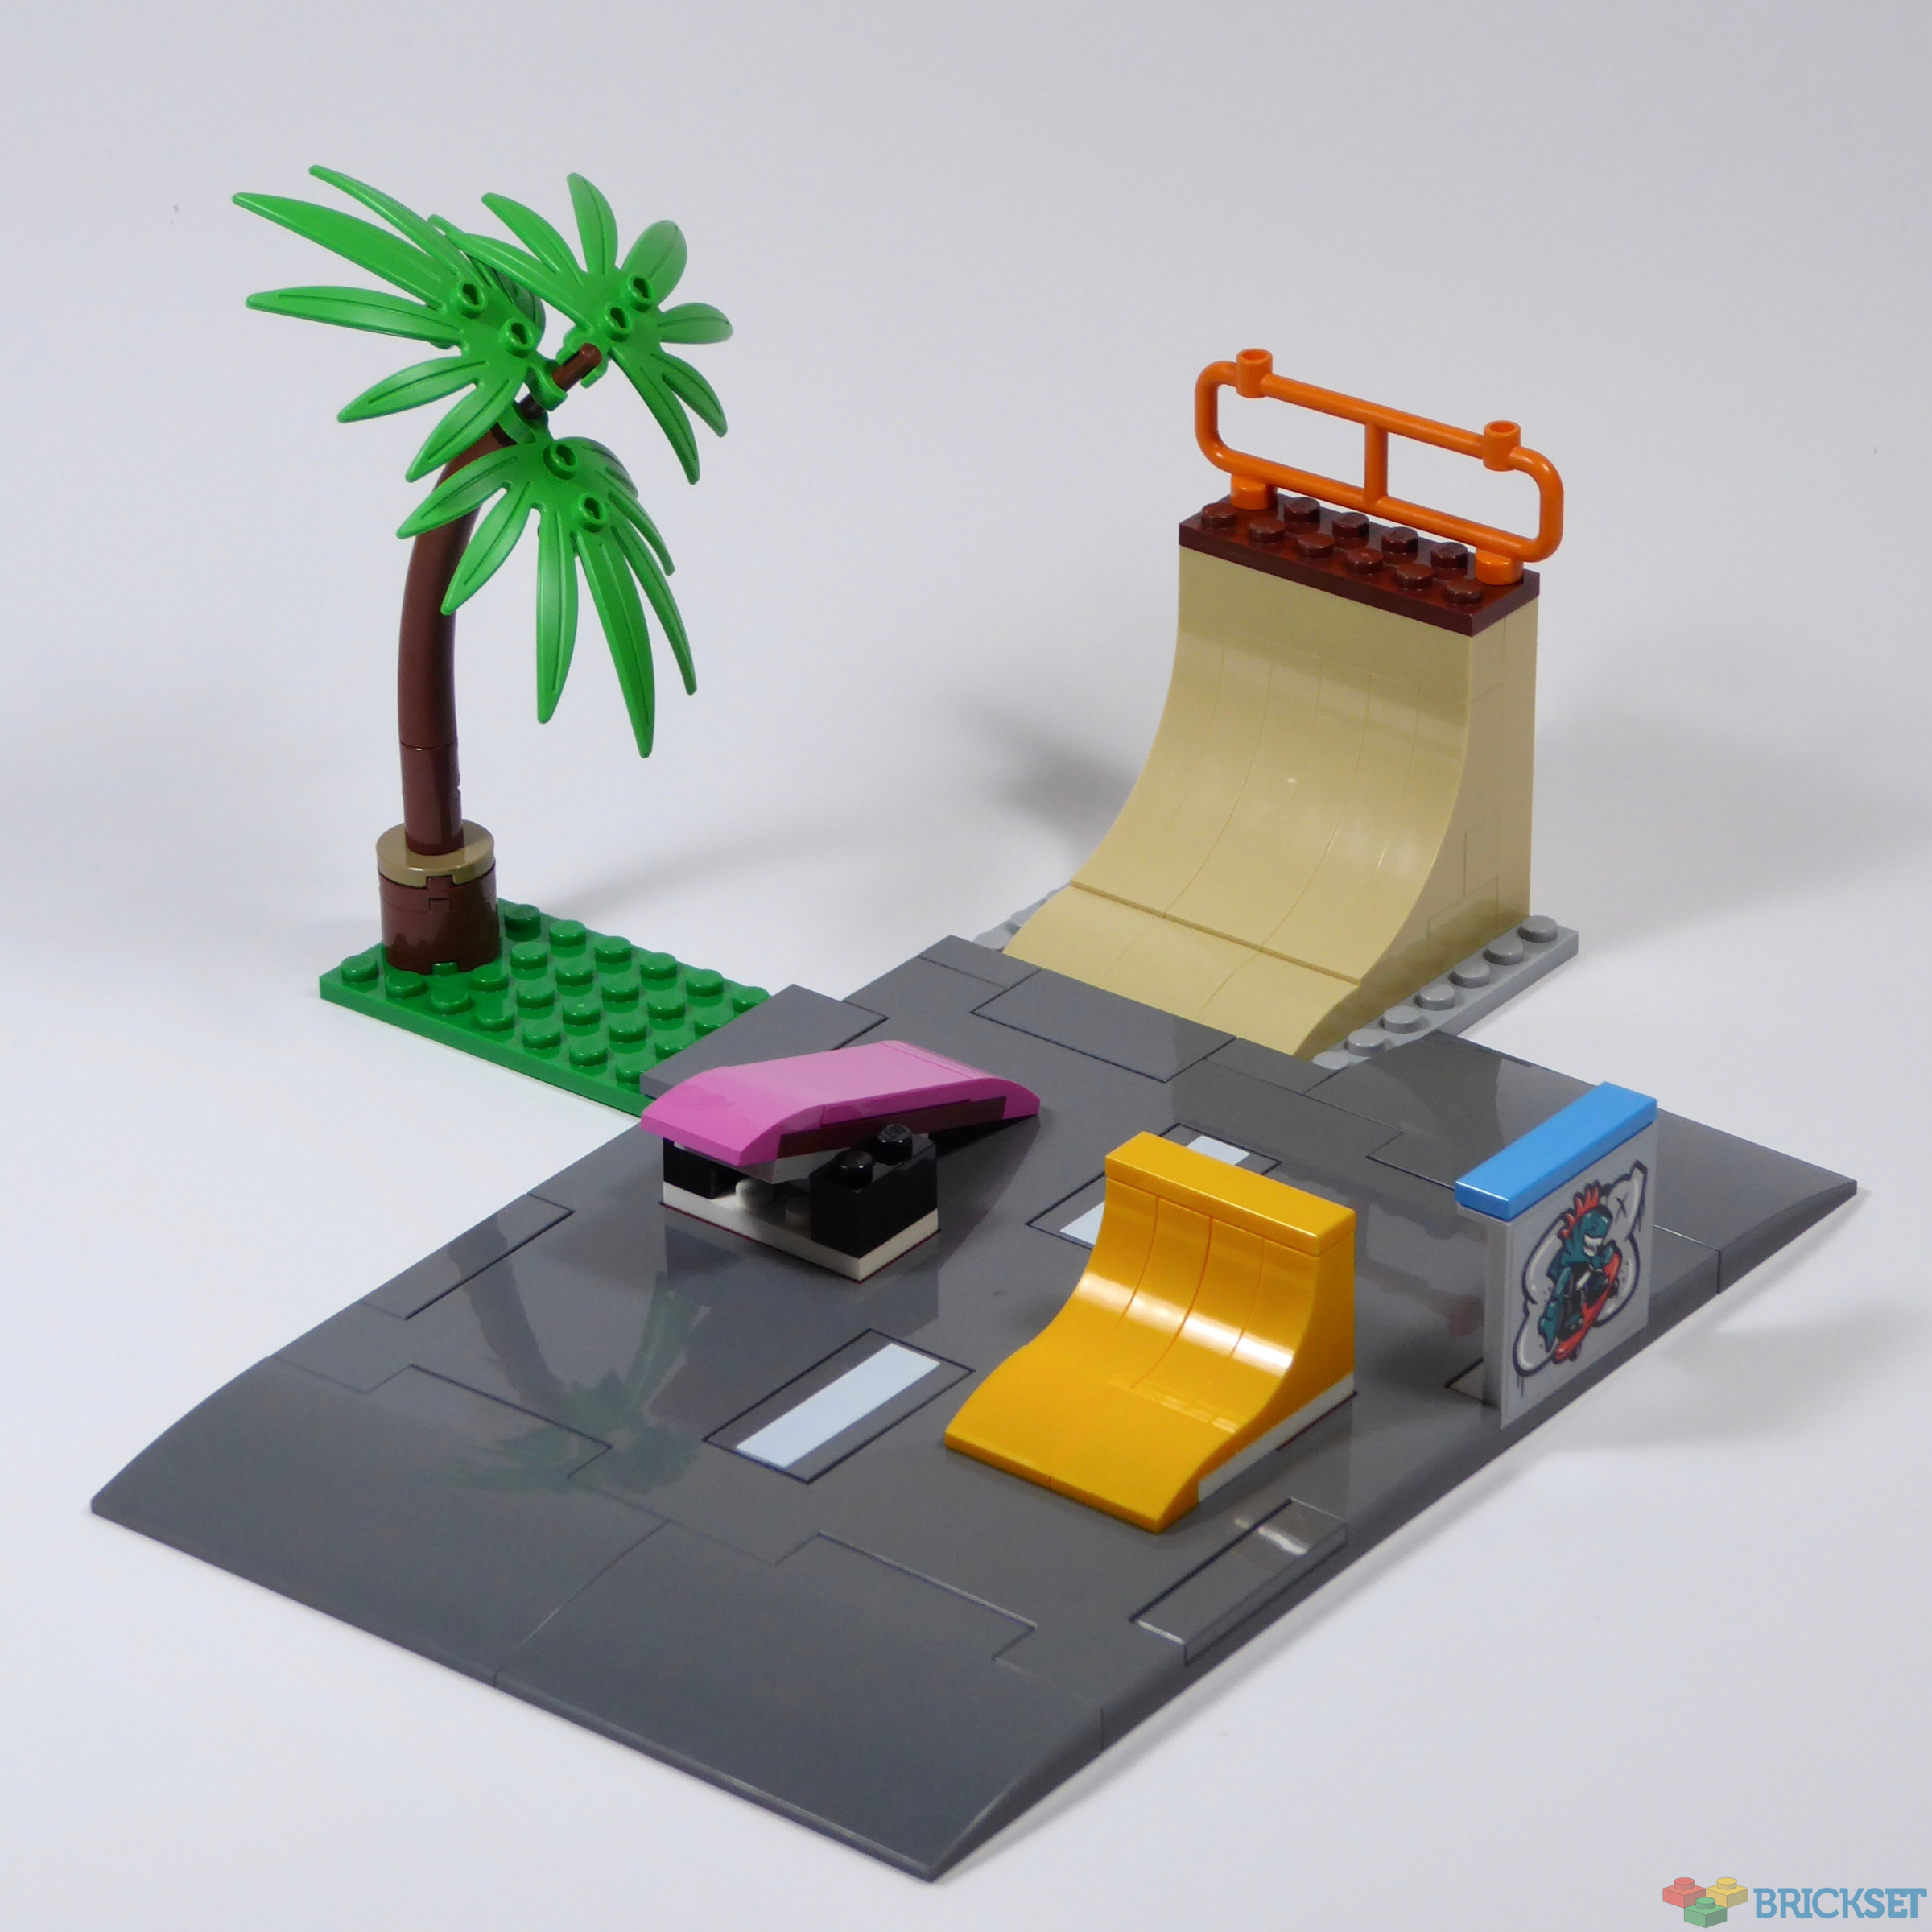 LEGO IDEAS - Giant Skate Park